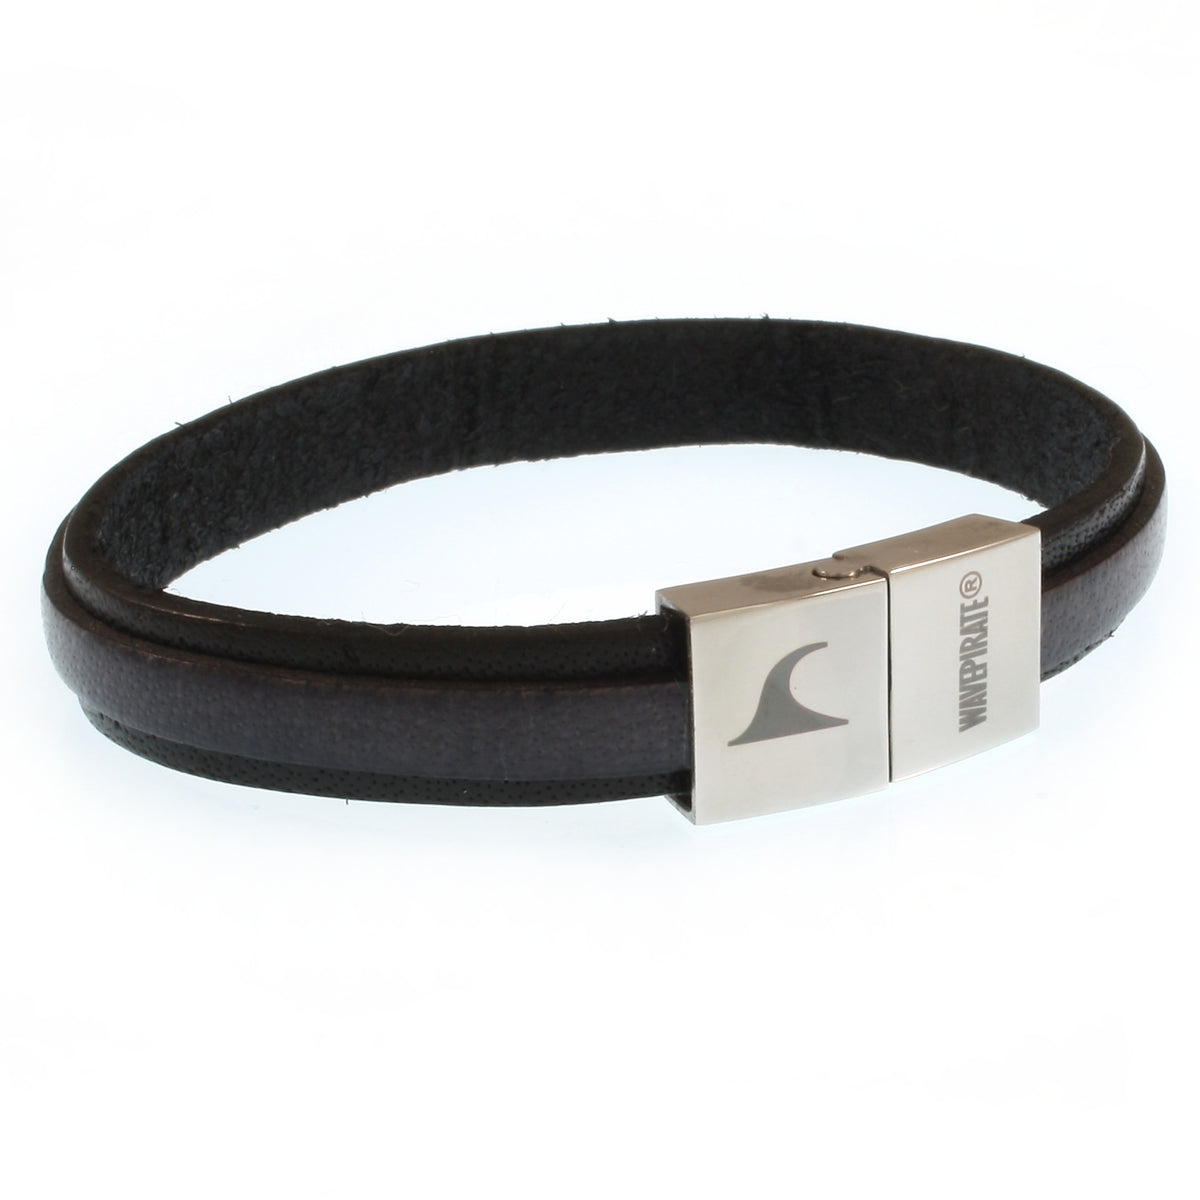 Herren-Leder-Armband-Line-schwarz-grau-flach-Edelstahlverschluss-vorn-wavepirate-shop